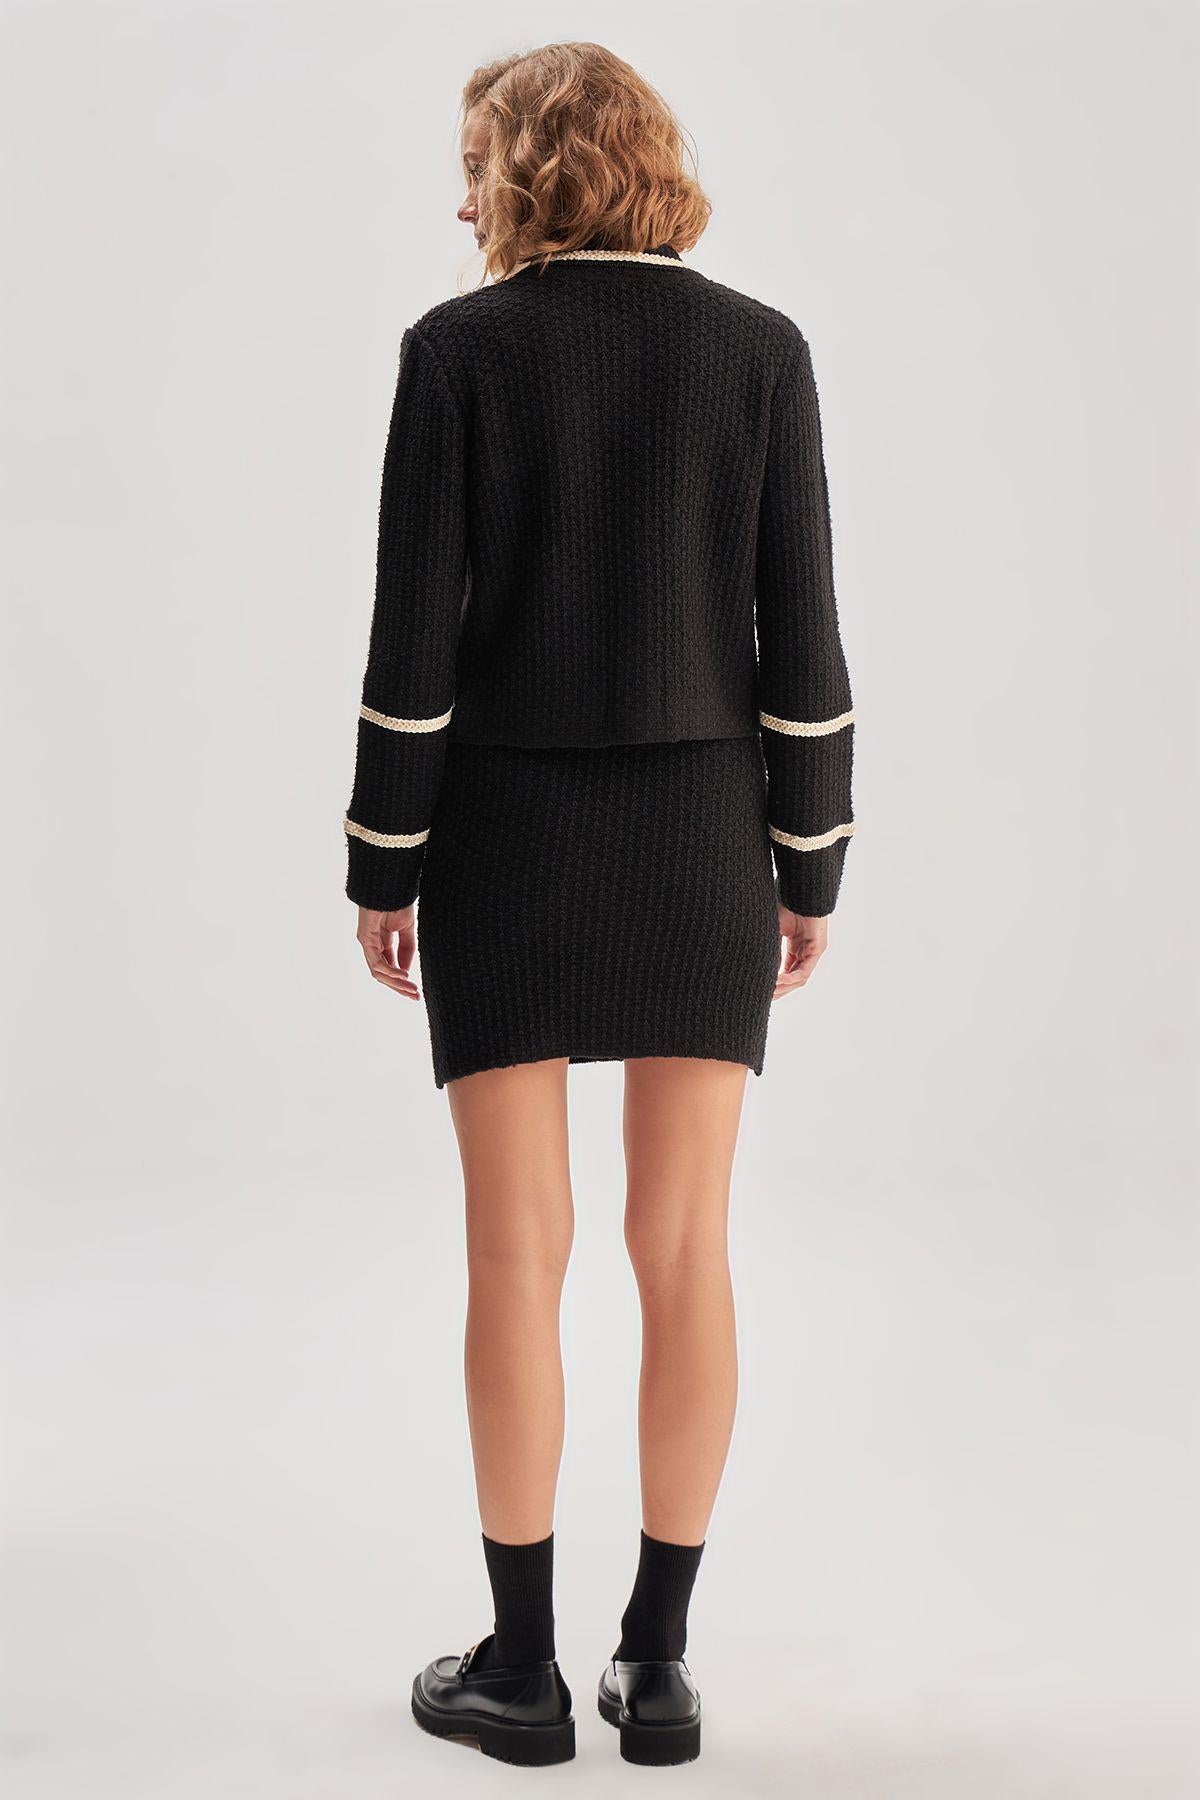 Black Tweed Knitwear Skirt